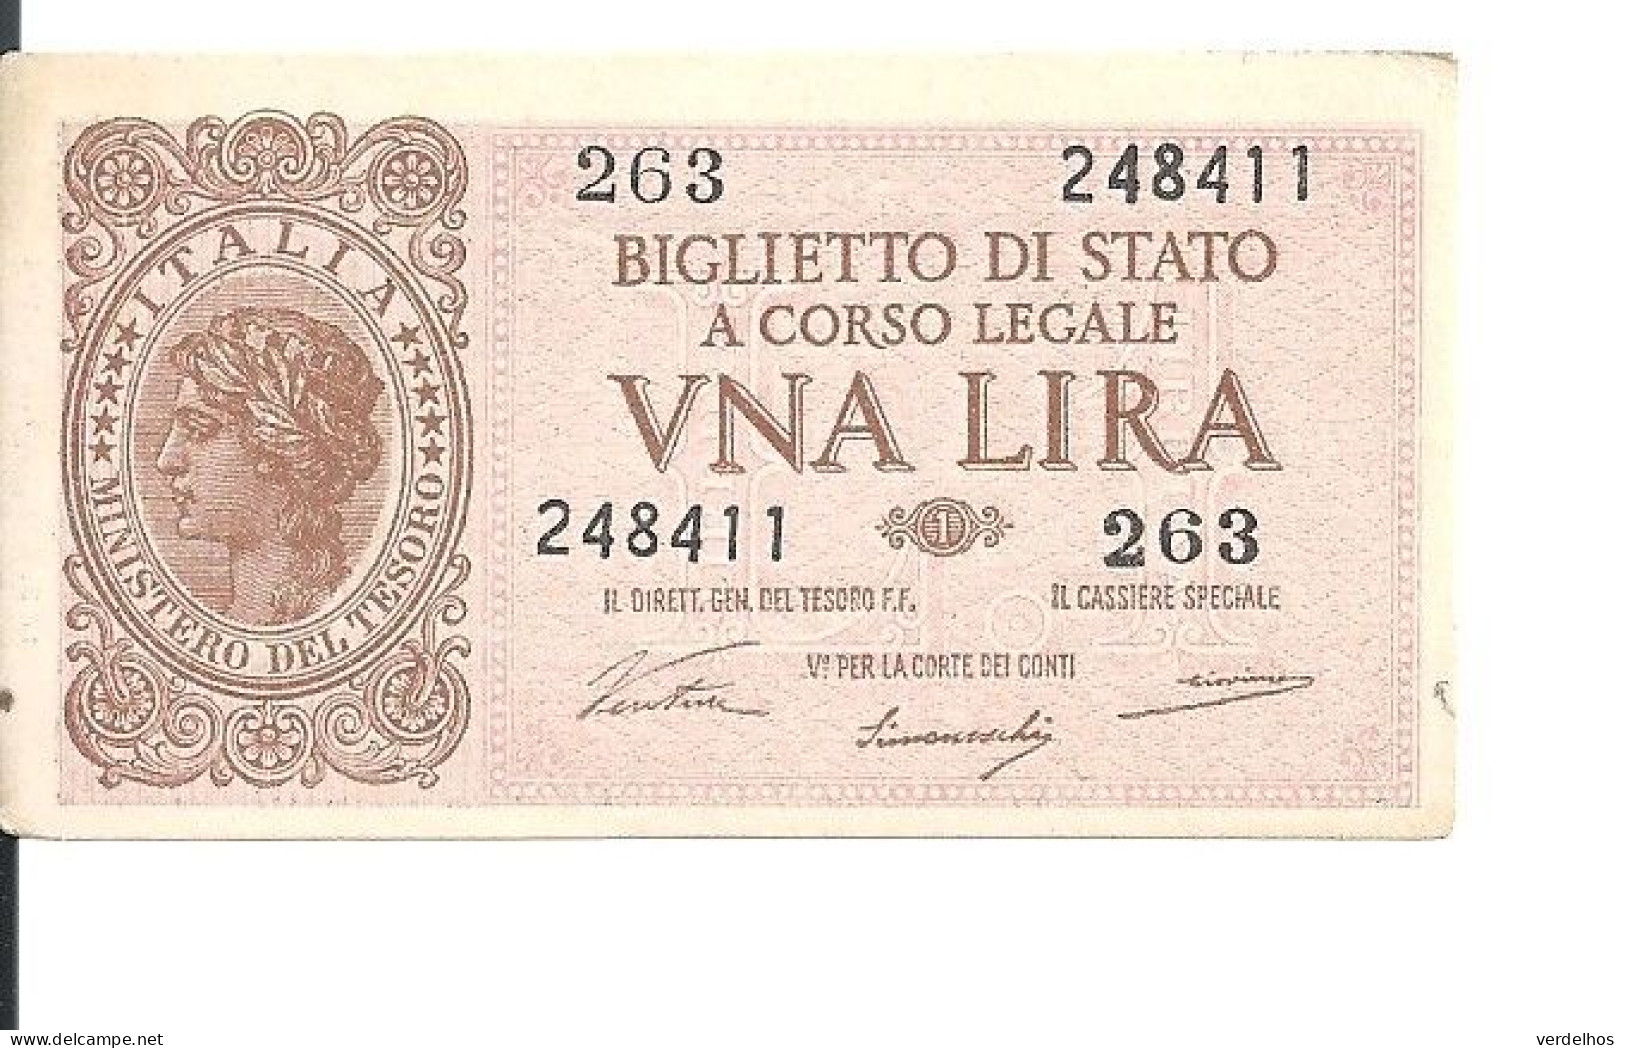 ITALIE 1 LIRE 1944 VF+ P 29 A - Regno D'Italia – 1 Lire